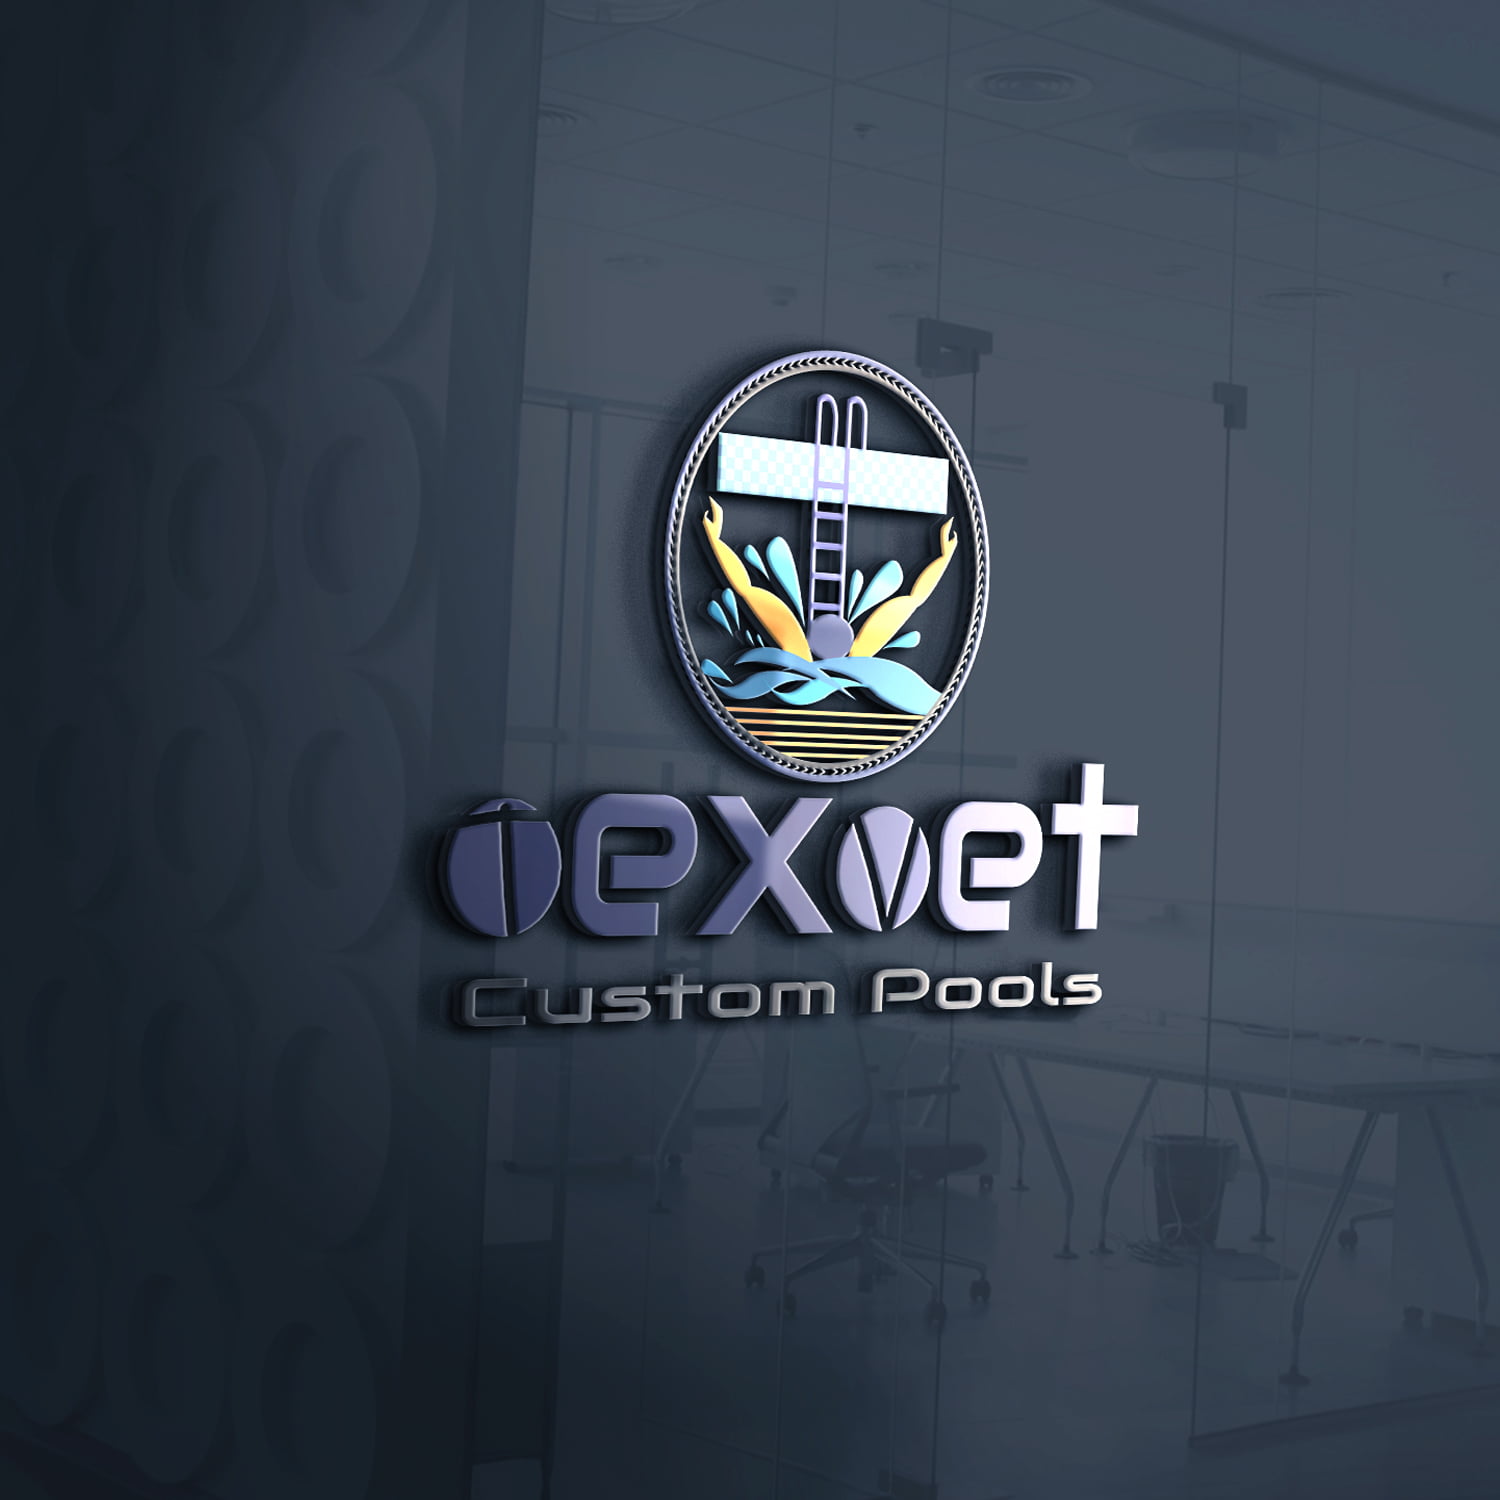 TexVet Custom Pools